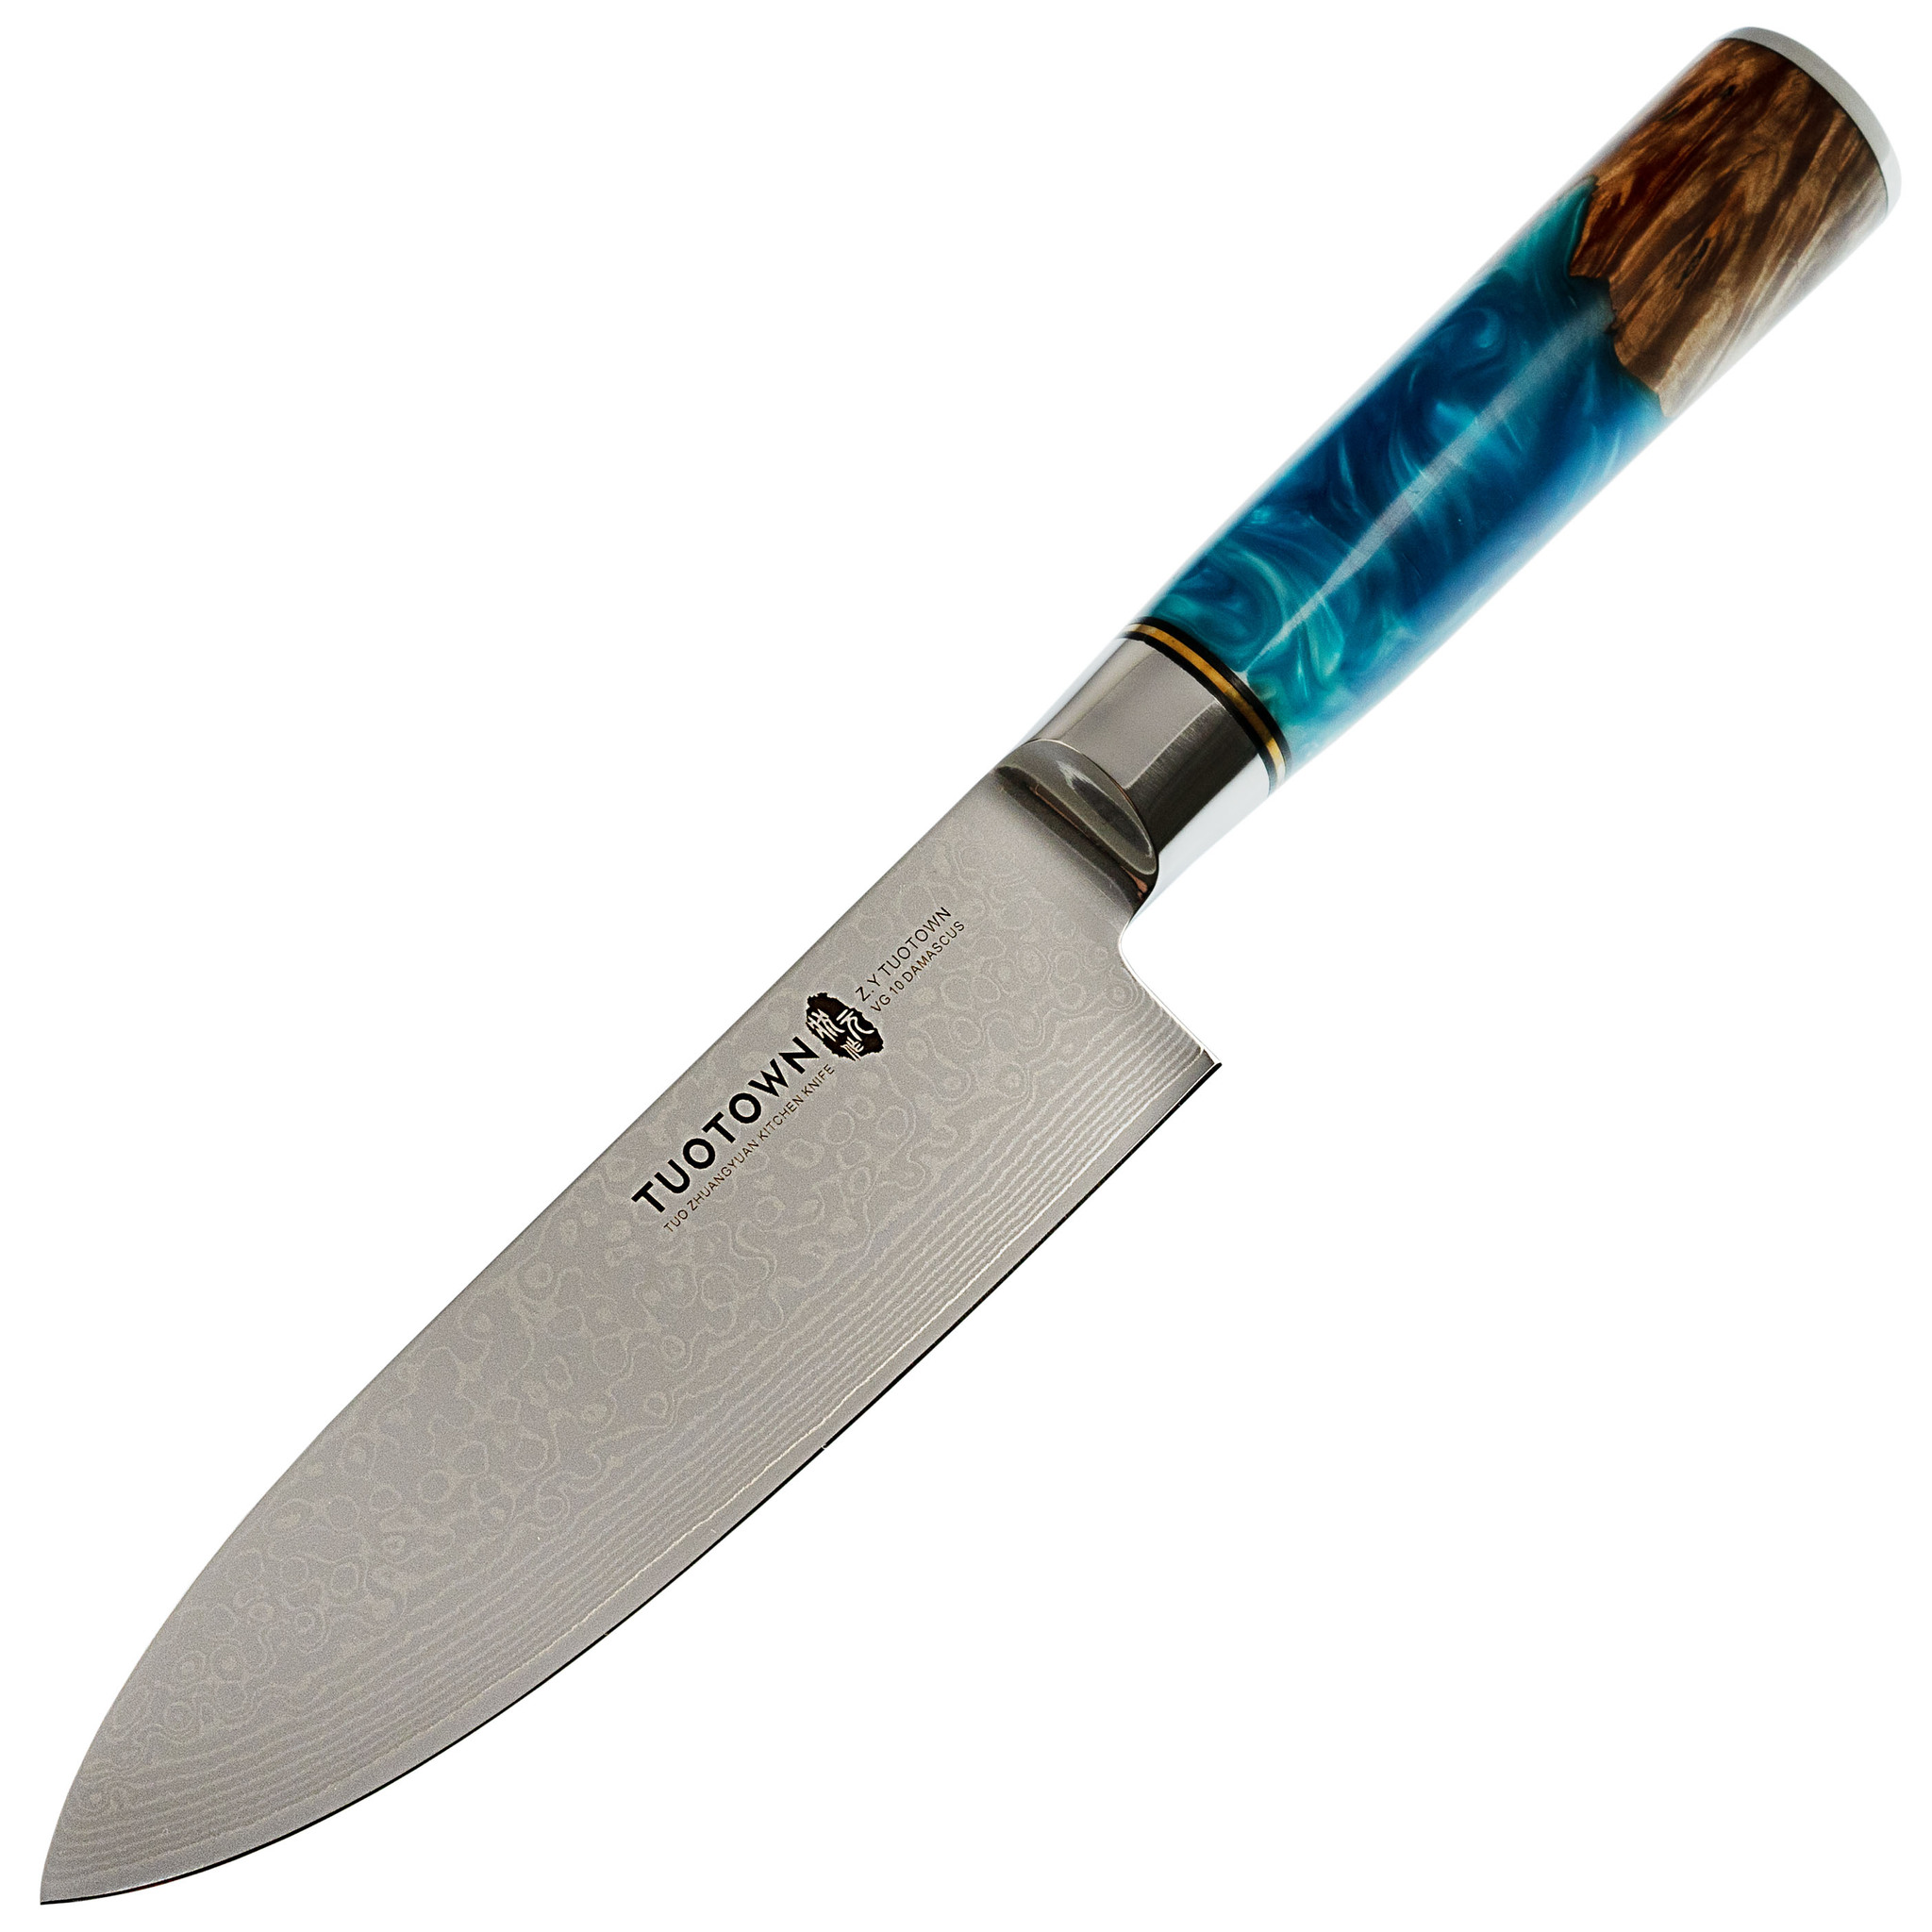 Кухонный нож Tuotown, сталь VG10 Damascus, рукоять дерево/эпоксидка